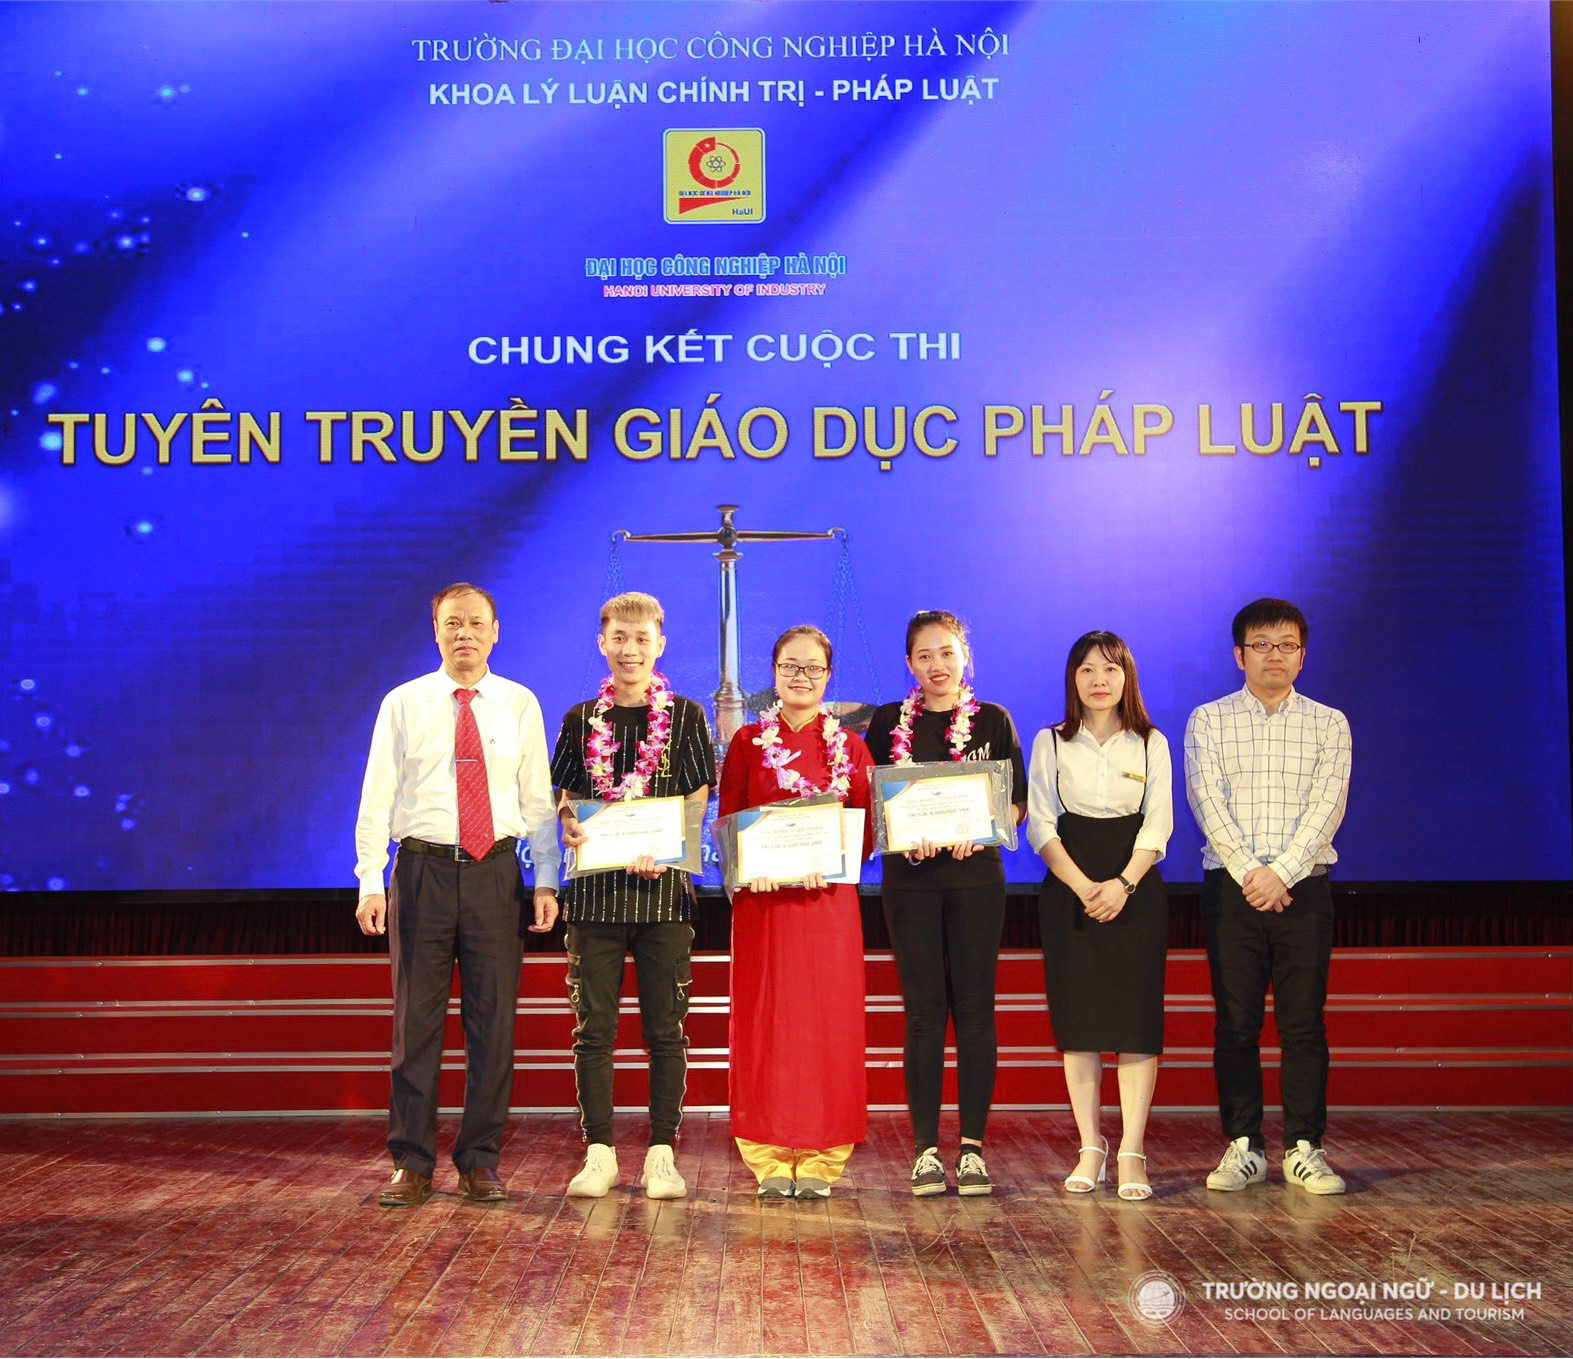 Tân cử nhân Nguyễn Thị Hồng Ánh, thực học - thực hành - thực danh - thực nghiệp